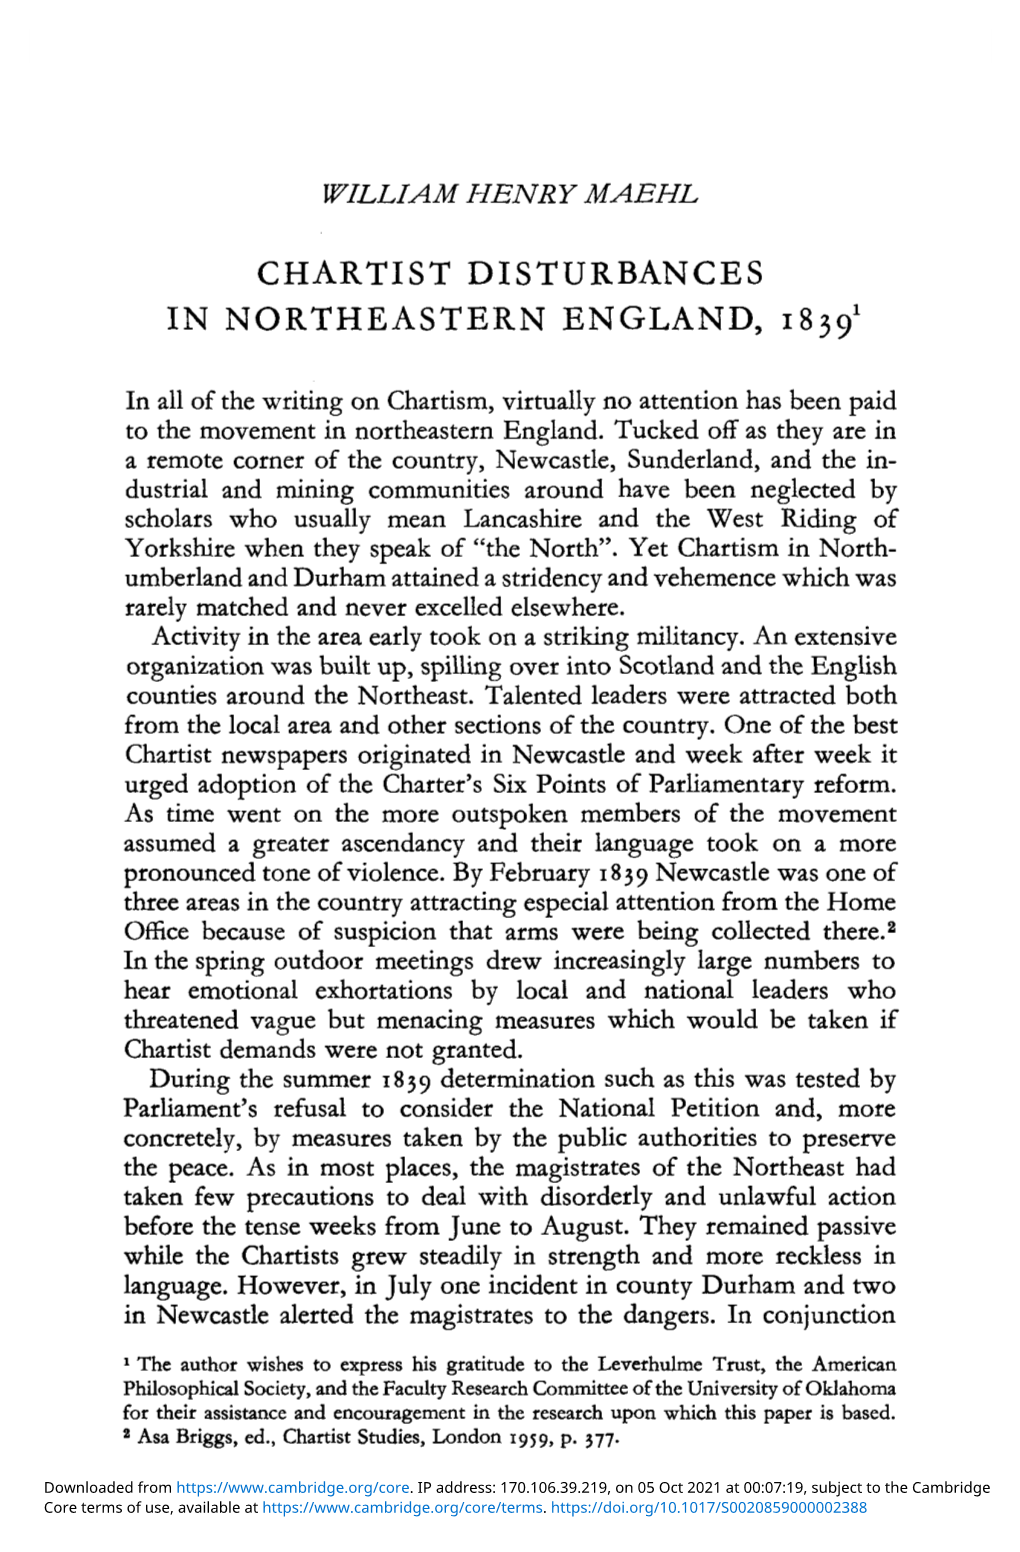 Chartist Disturbances in Northeastern England, 18391